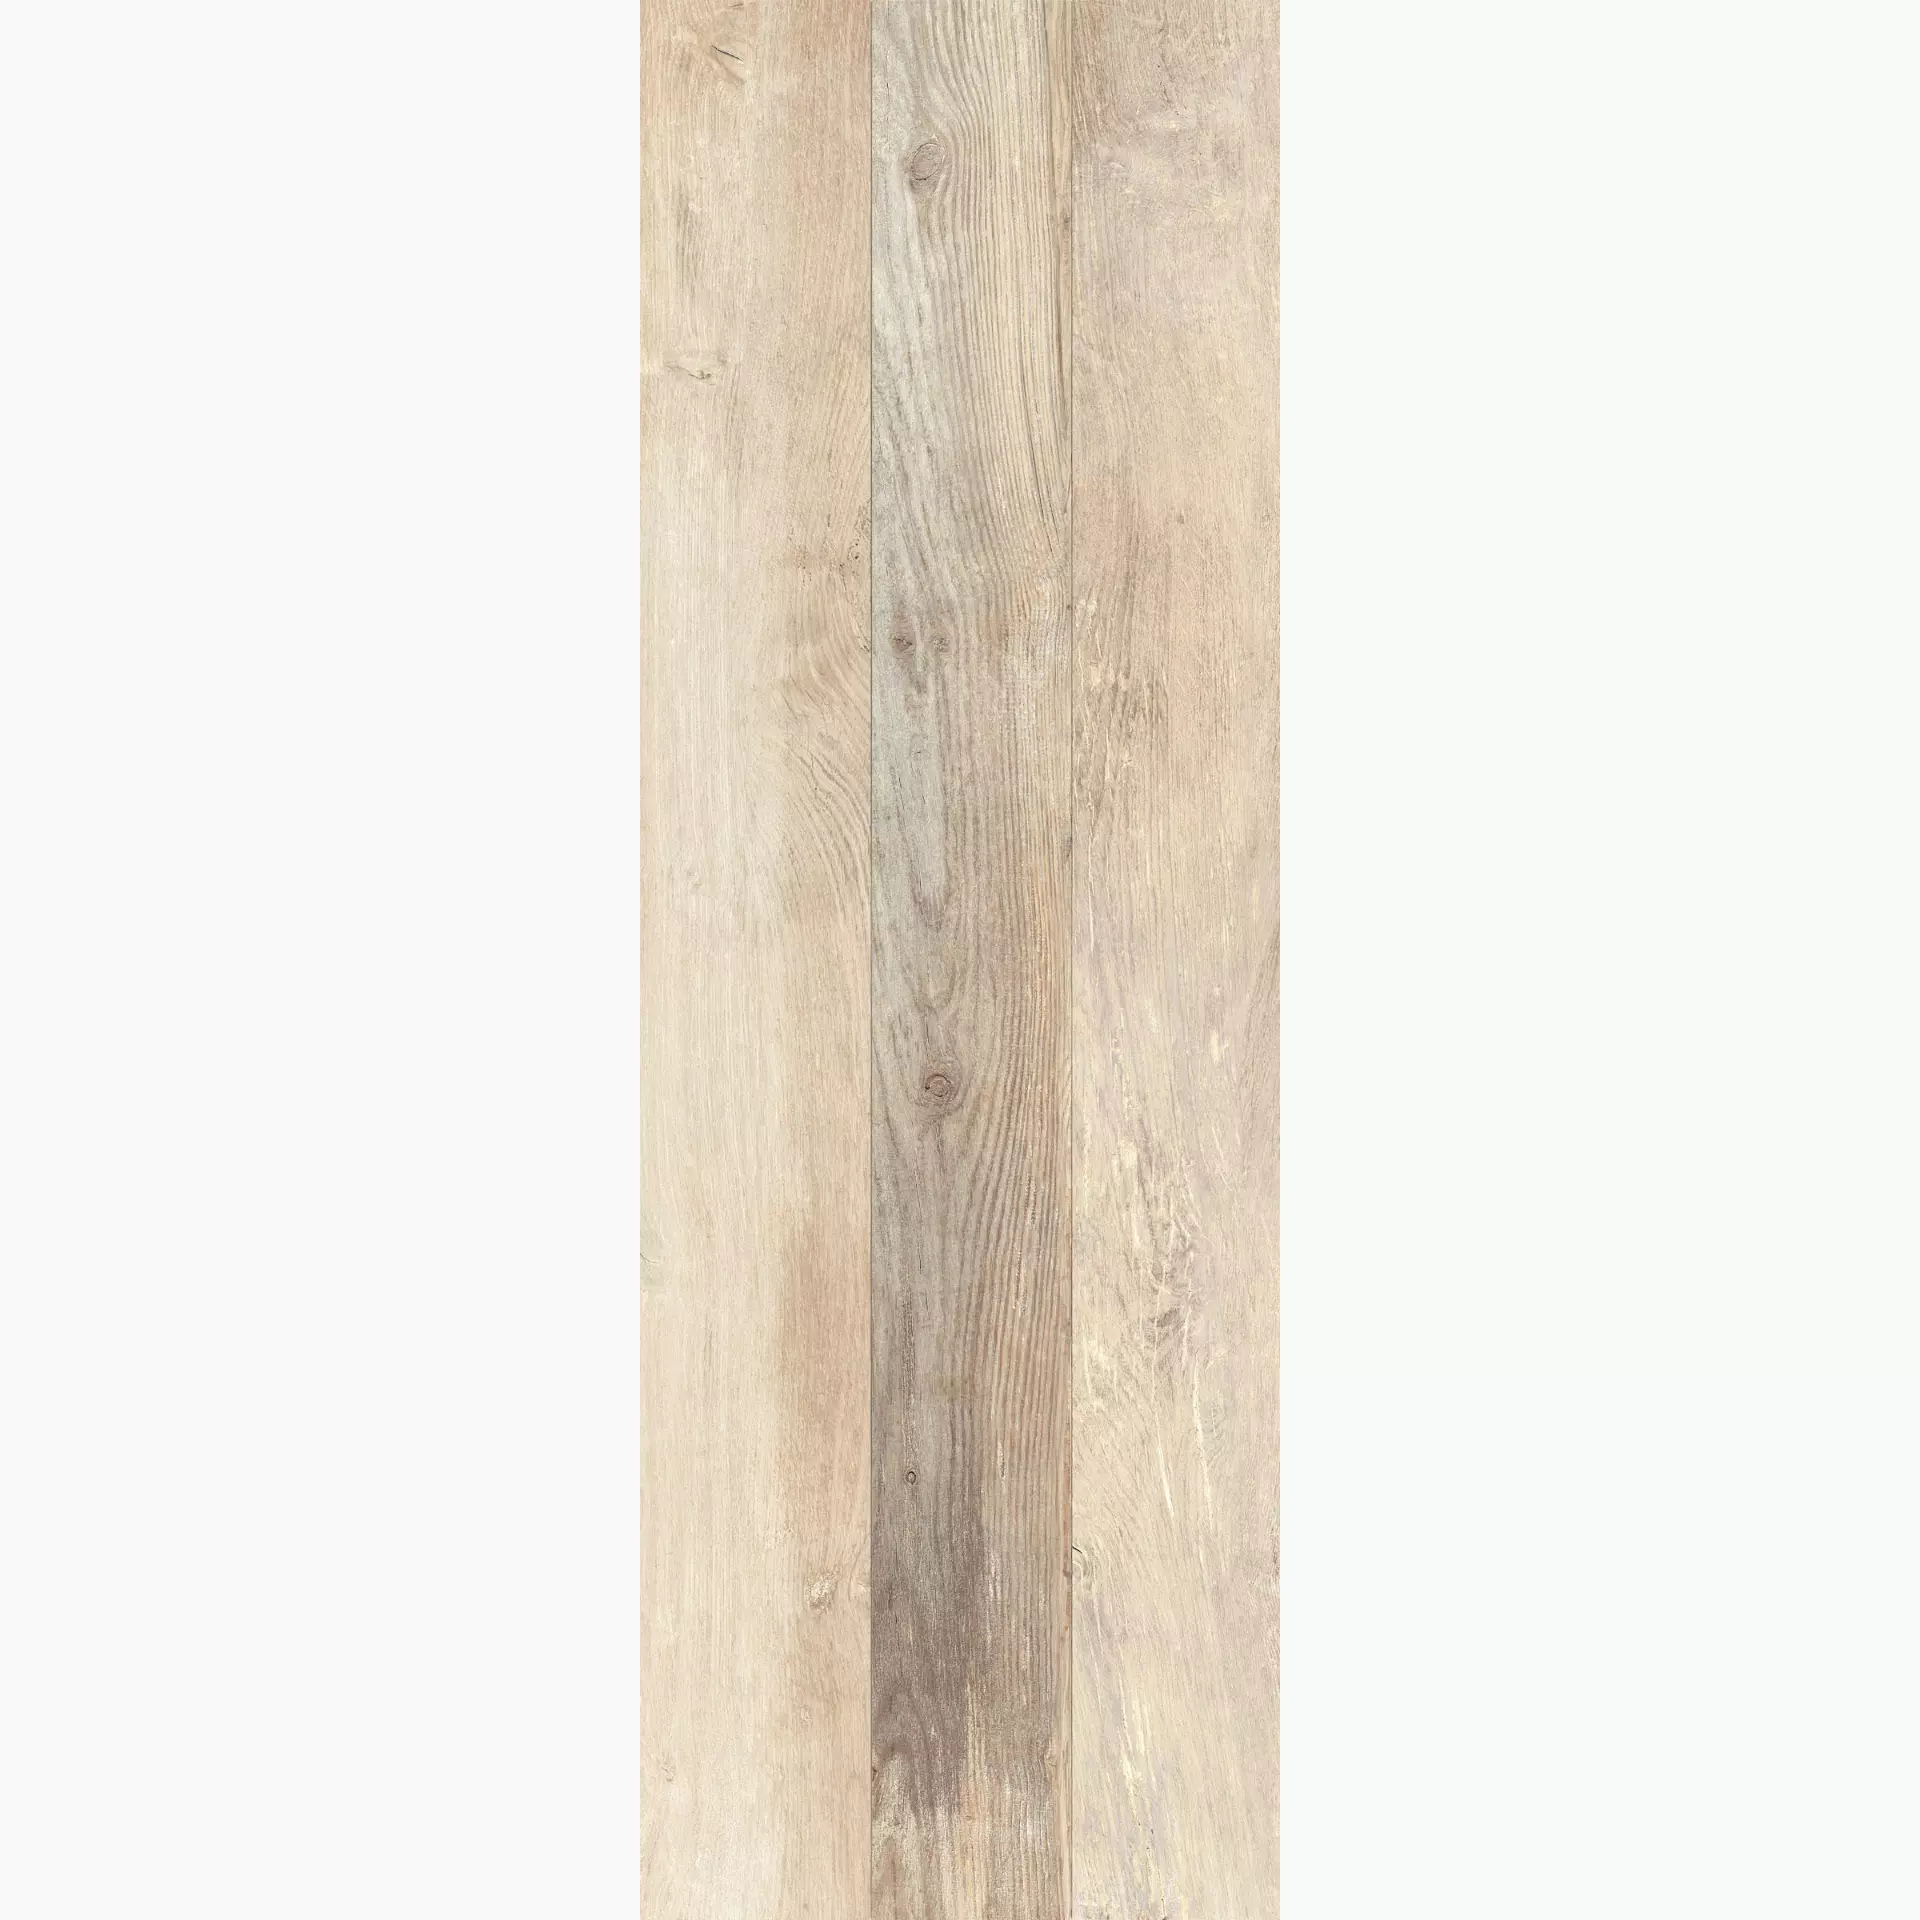 KRONOS Woodside Oak Grip Oak 6651 grip 40x120cm Dekor Doga 2.0 rektifiziert 20mm